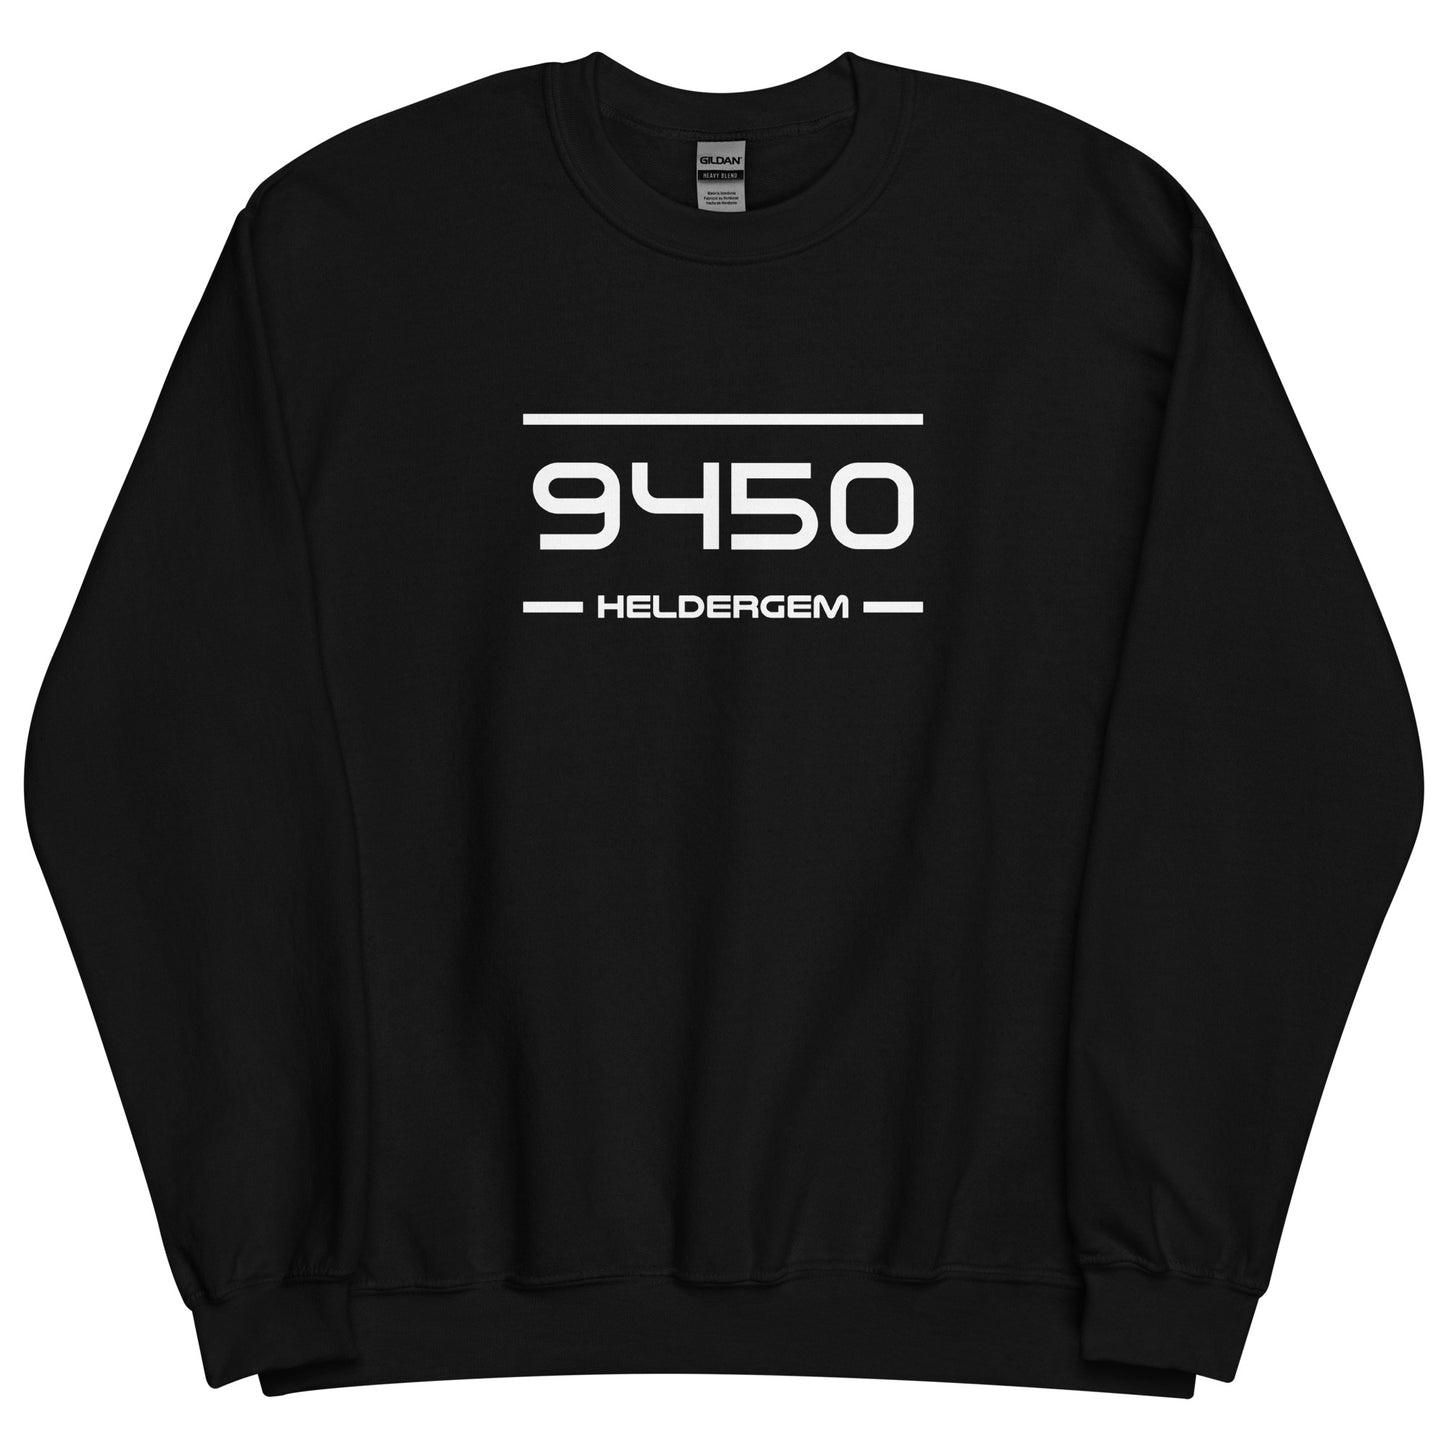 Sweater - 9450 - Heldergem (M/V)